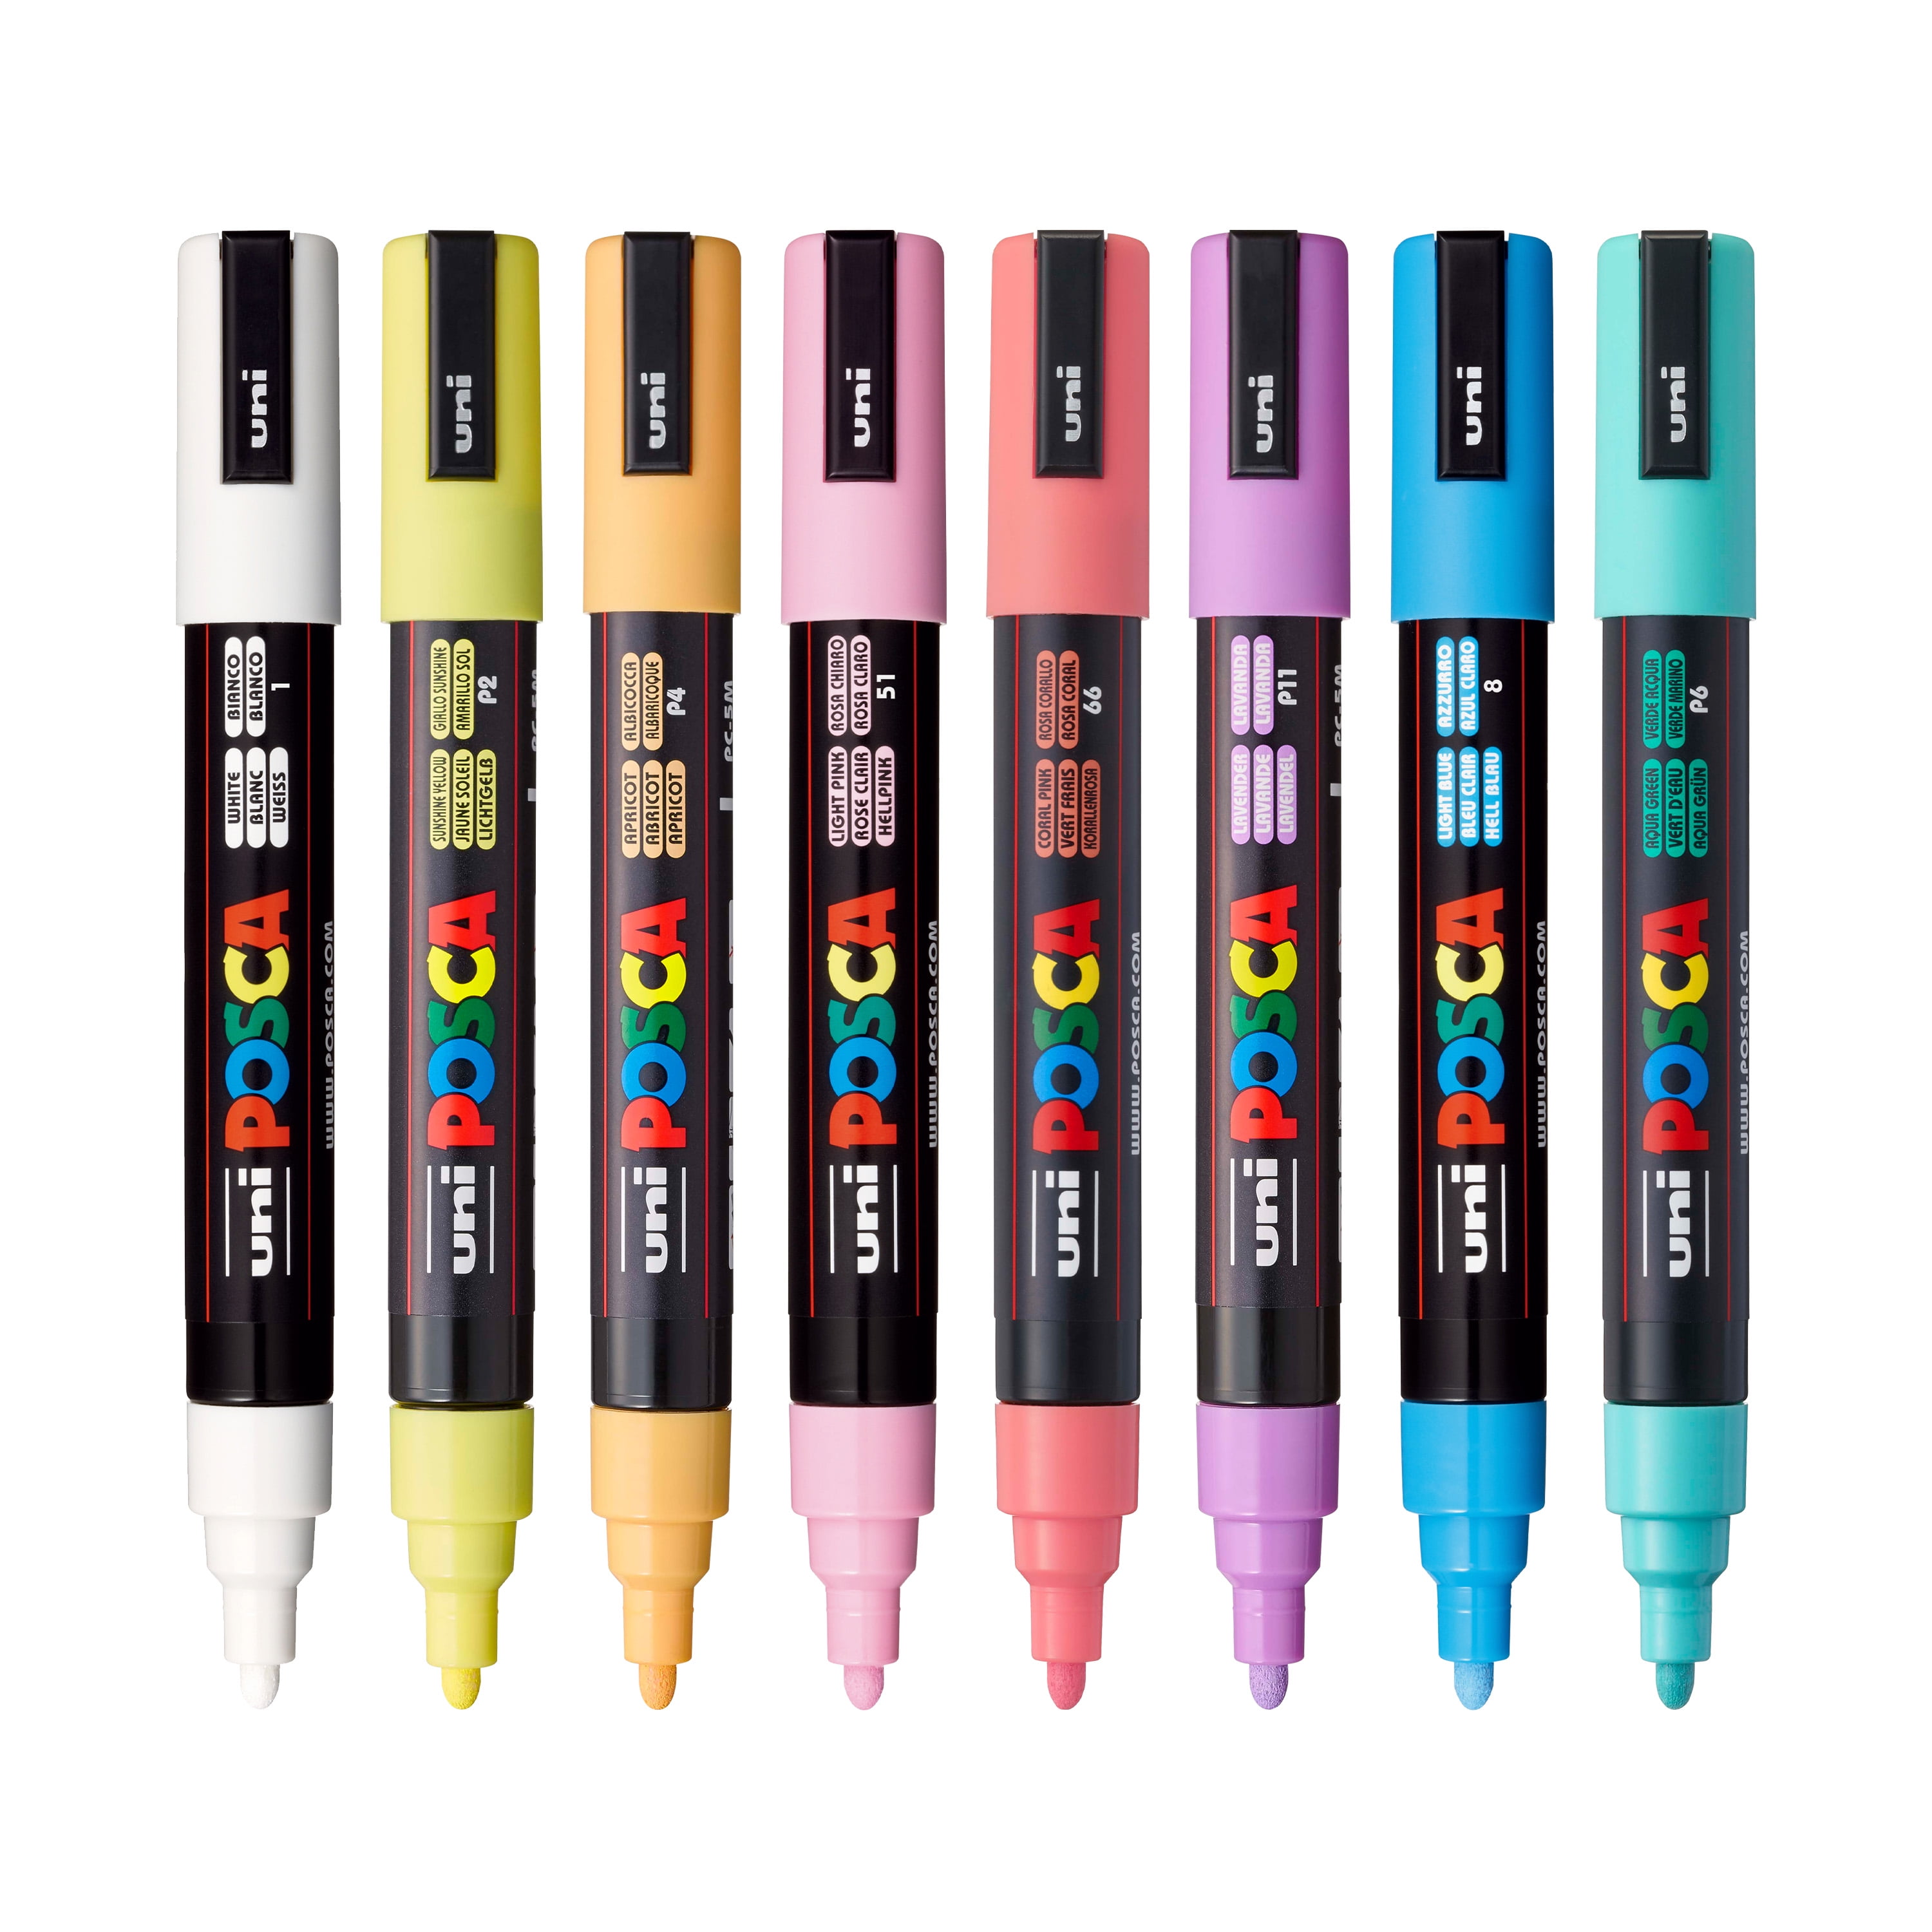 Uni Posca Acrylic Paint Marker Pens Set Plumones Marcadores Japanese S -  PC-5m 15 Colors Set - All City Shoppings